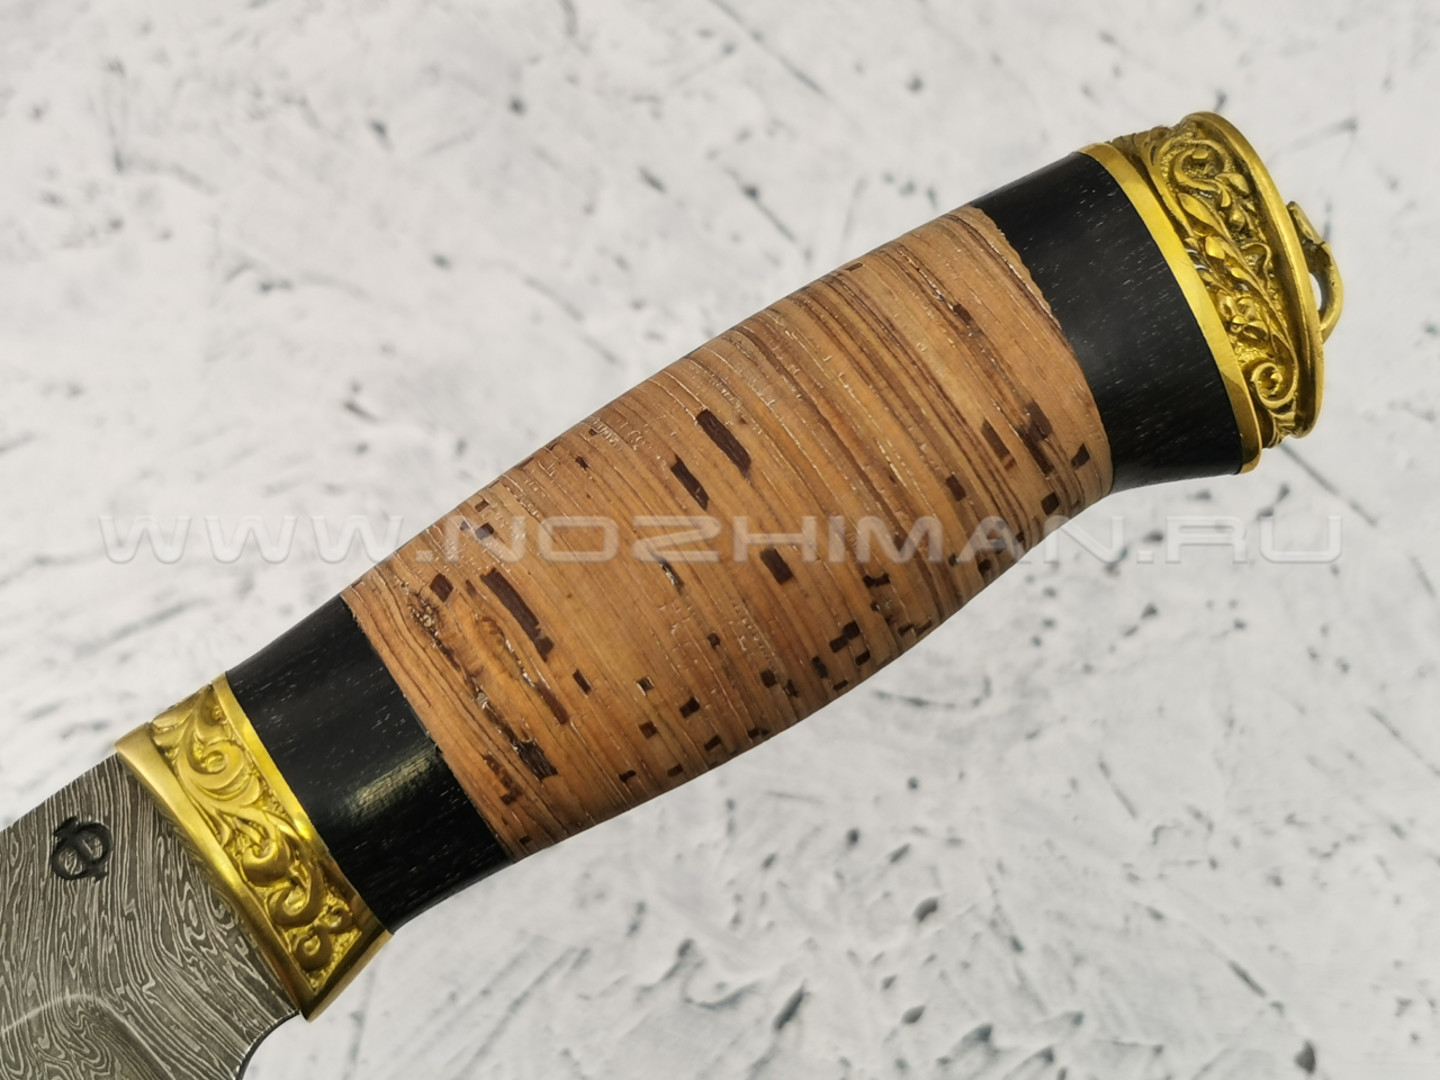 Нож "Кедр" дамасская сталь, рукоять береста (Федотов А. В.) 009Д21